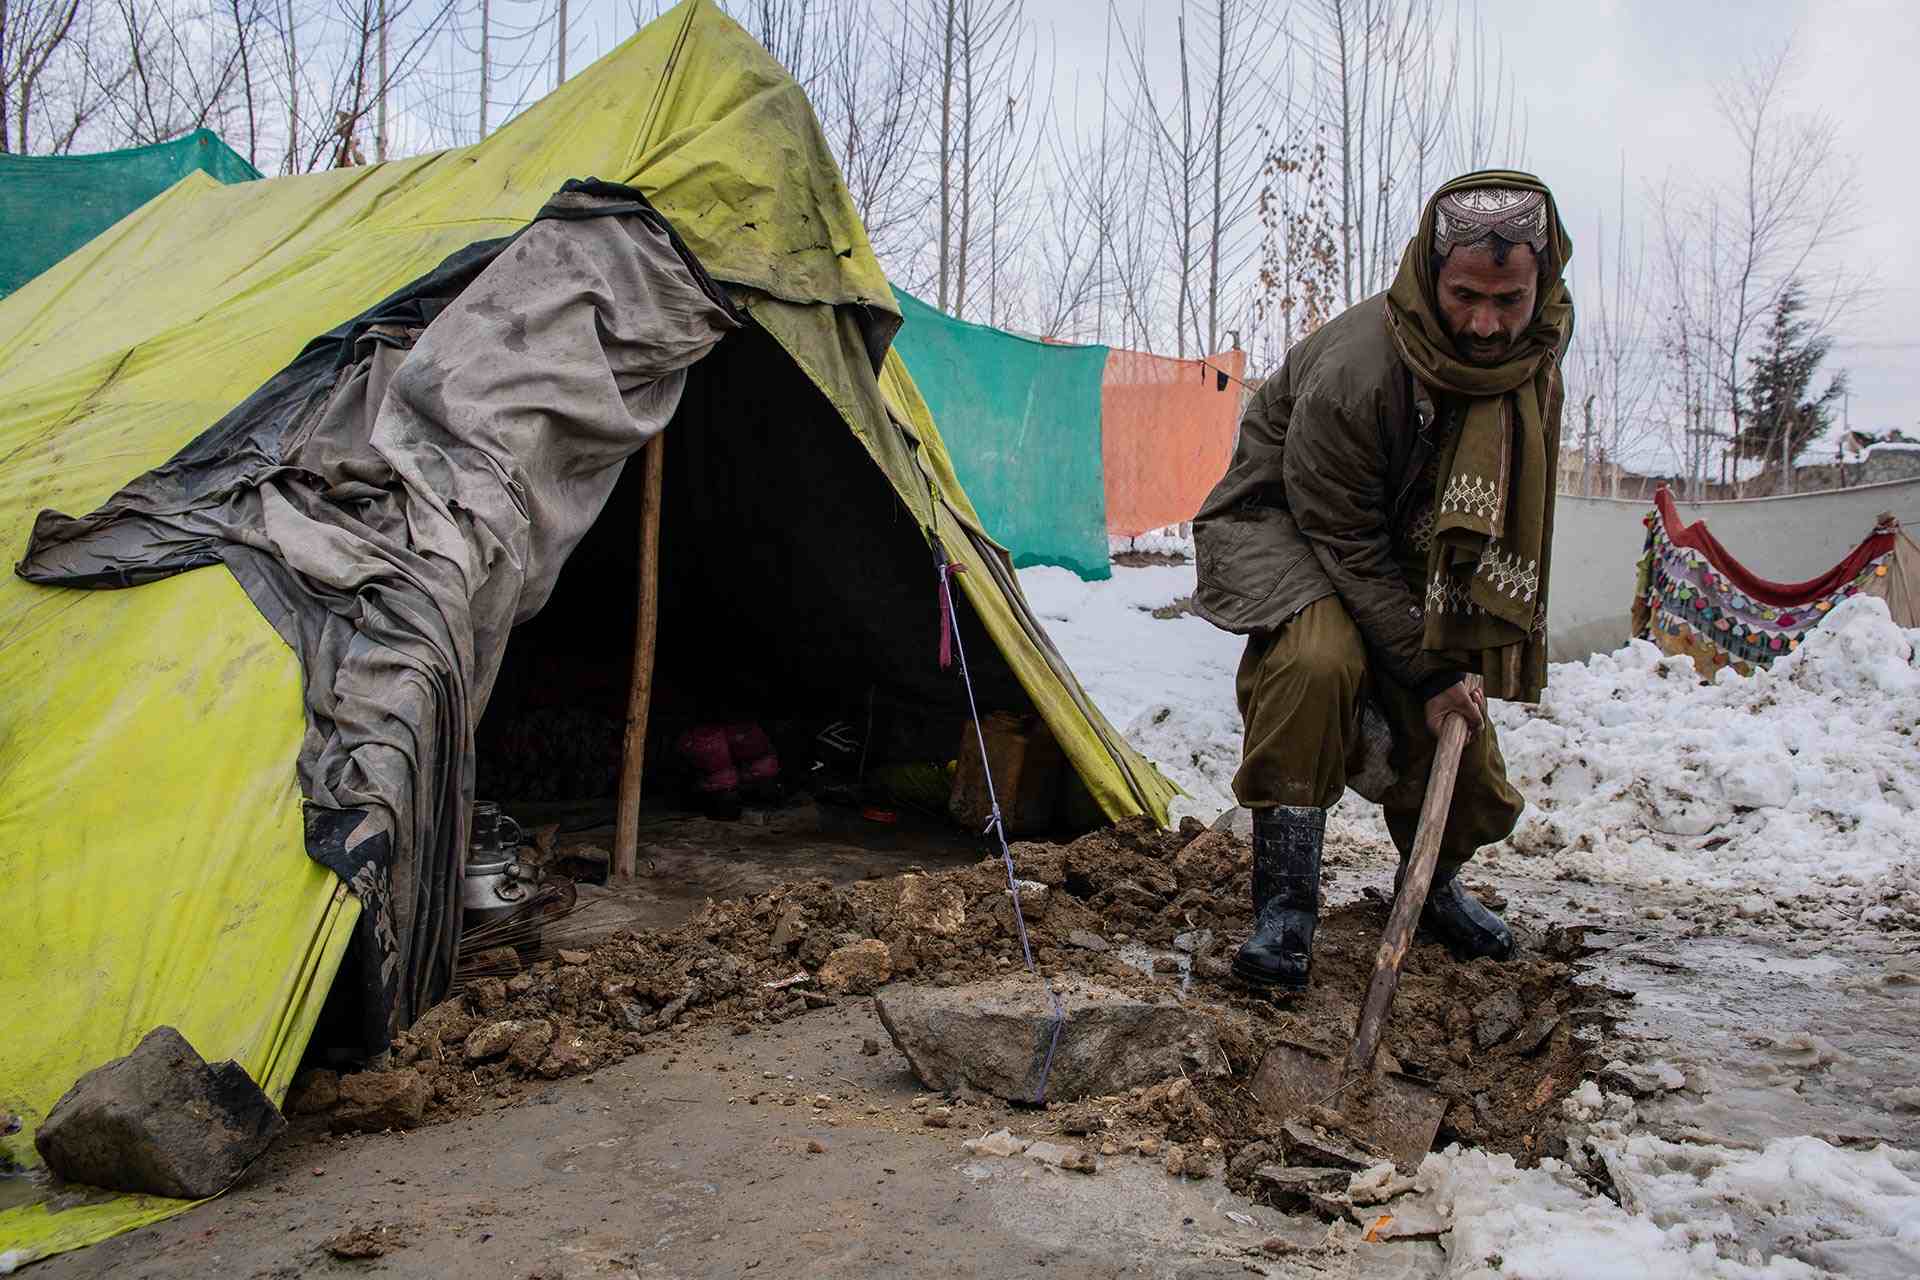 Ein Mann befreit seinen Zelteingang von Schnee und Matsch. Die dünnen Zeltplanen schützen nicht vor der eisigen Kälte des aghanischen Winters.